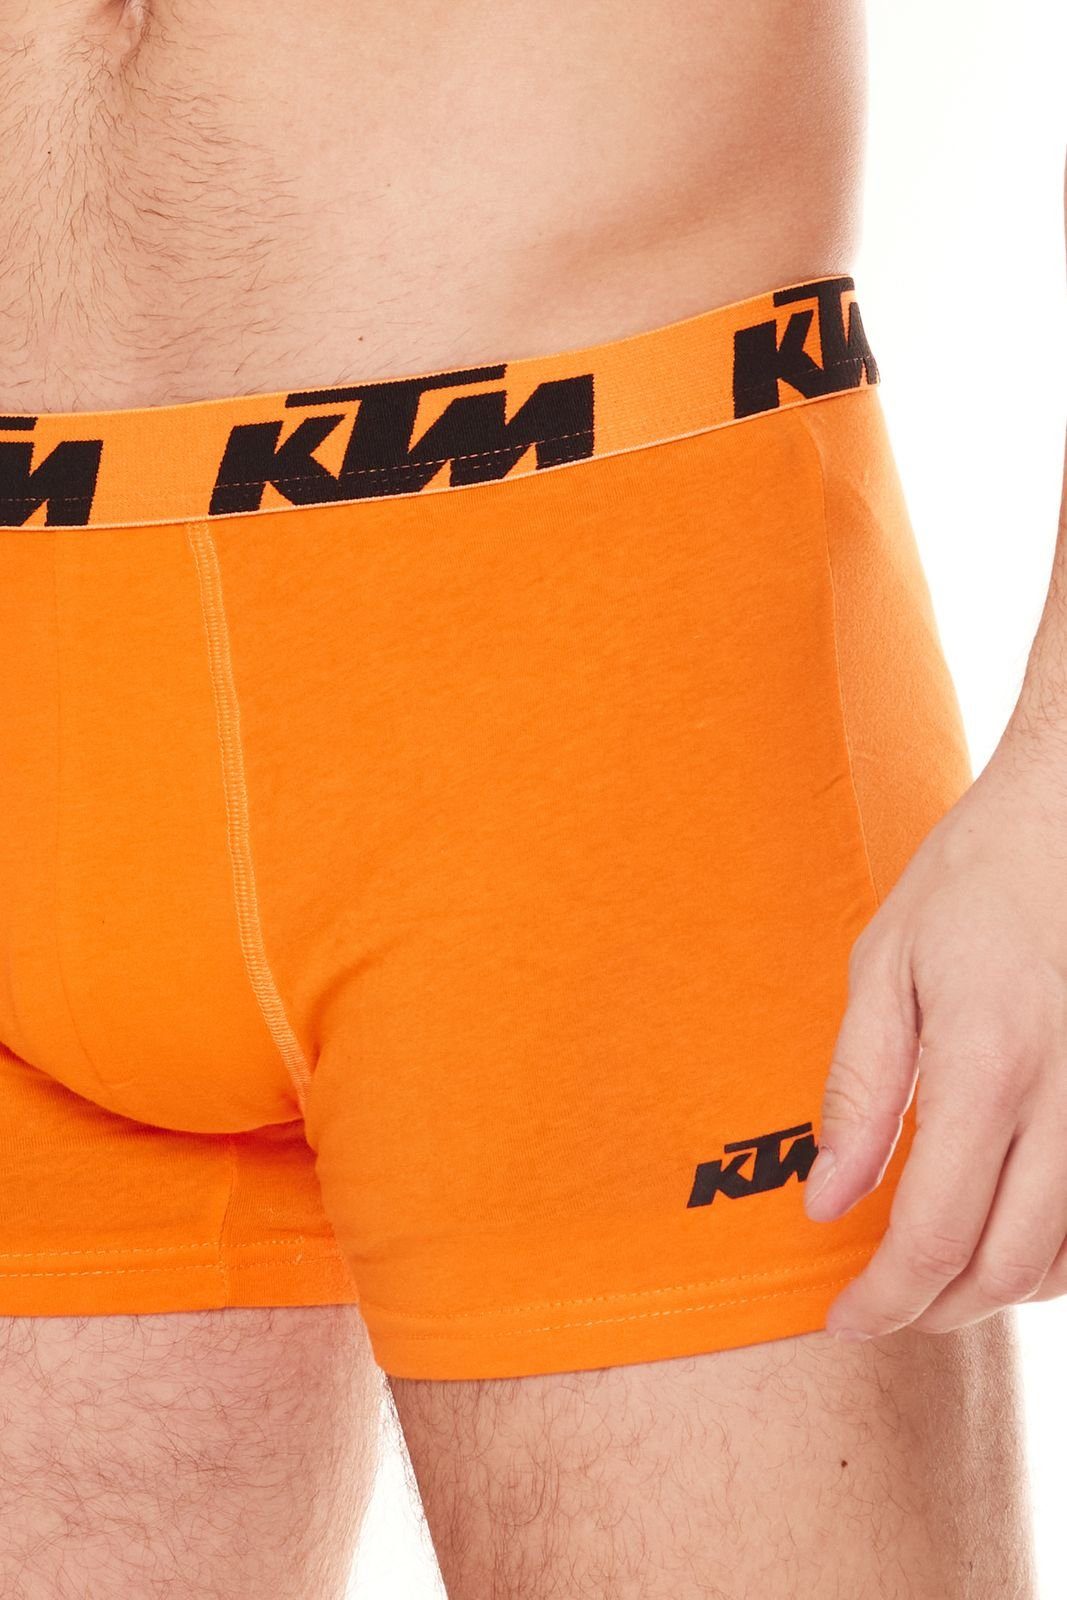 KTM Boxershorts mit Logoprint KTM / Dunkelgrau/Orange Grey Boxershorts Unterwäsche 1BCX2ASS2D knallige Dark GOR Orange2 Herren 2er Pack Unterhose